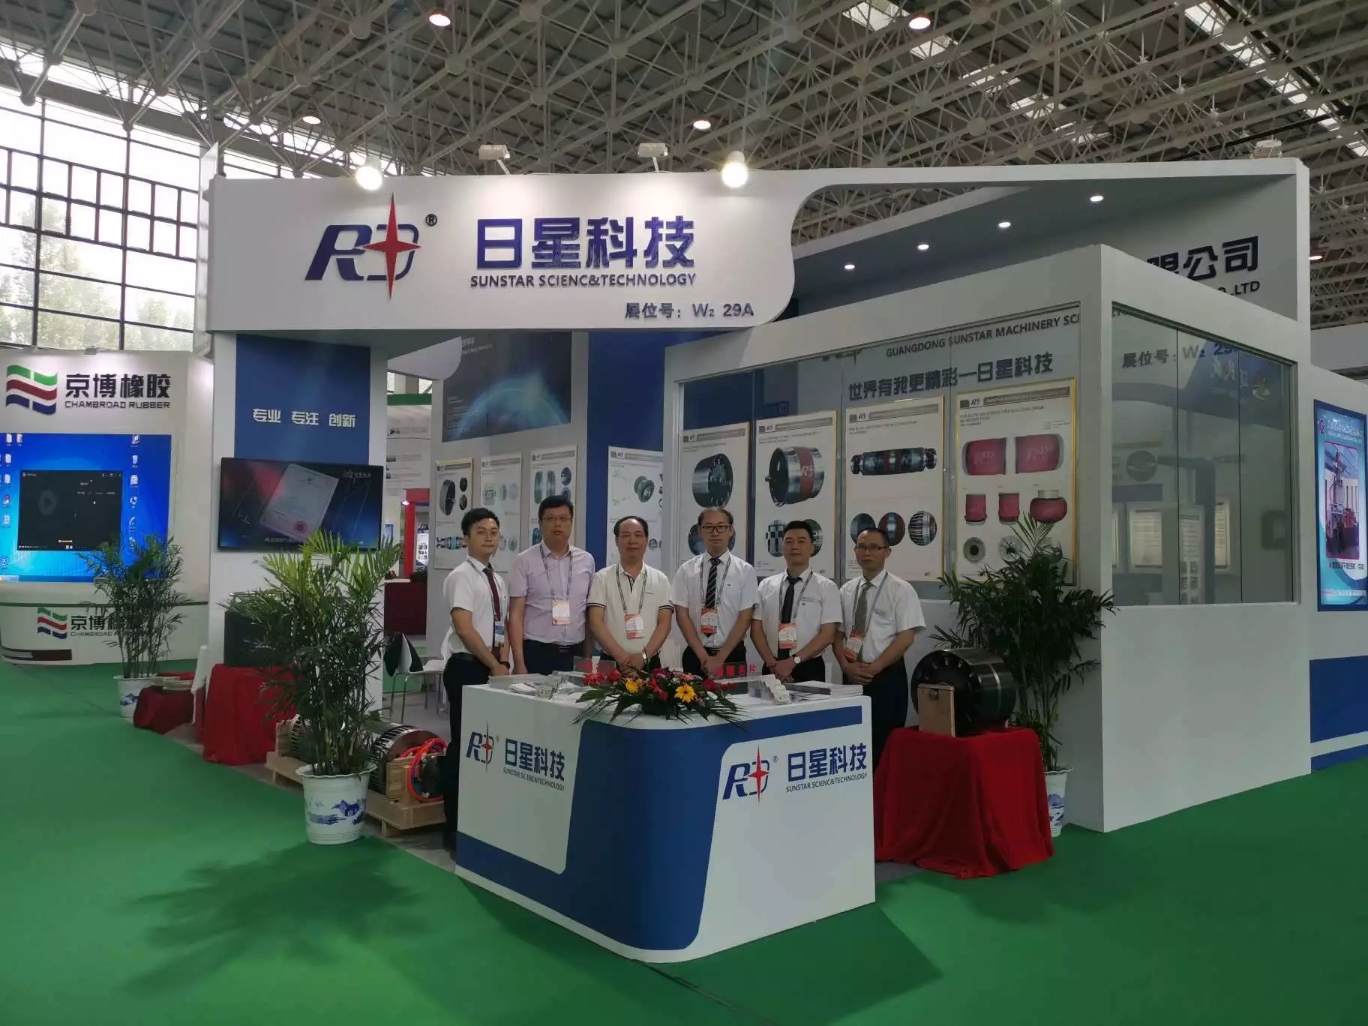 广东日星机械科技有限公司展会邀请函 第十届中国国际橡胶轮胎暨汽车配件展览会